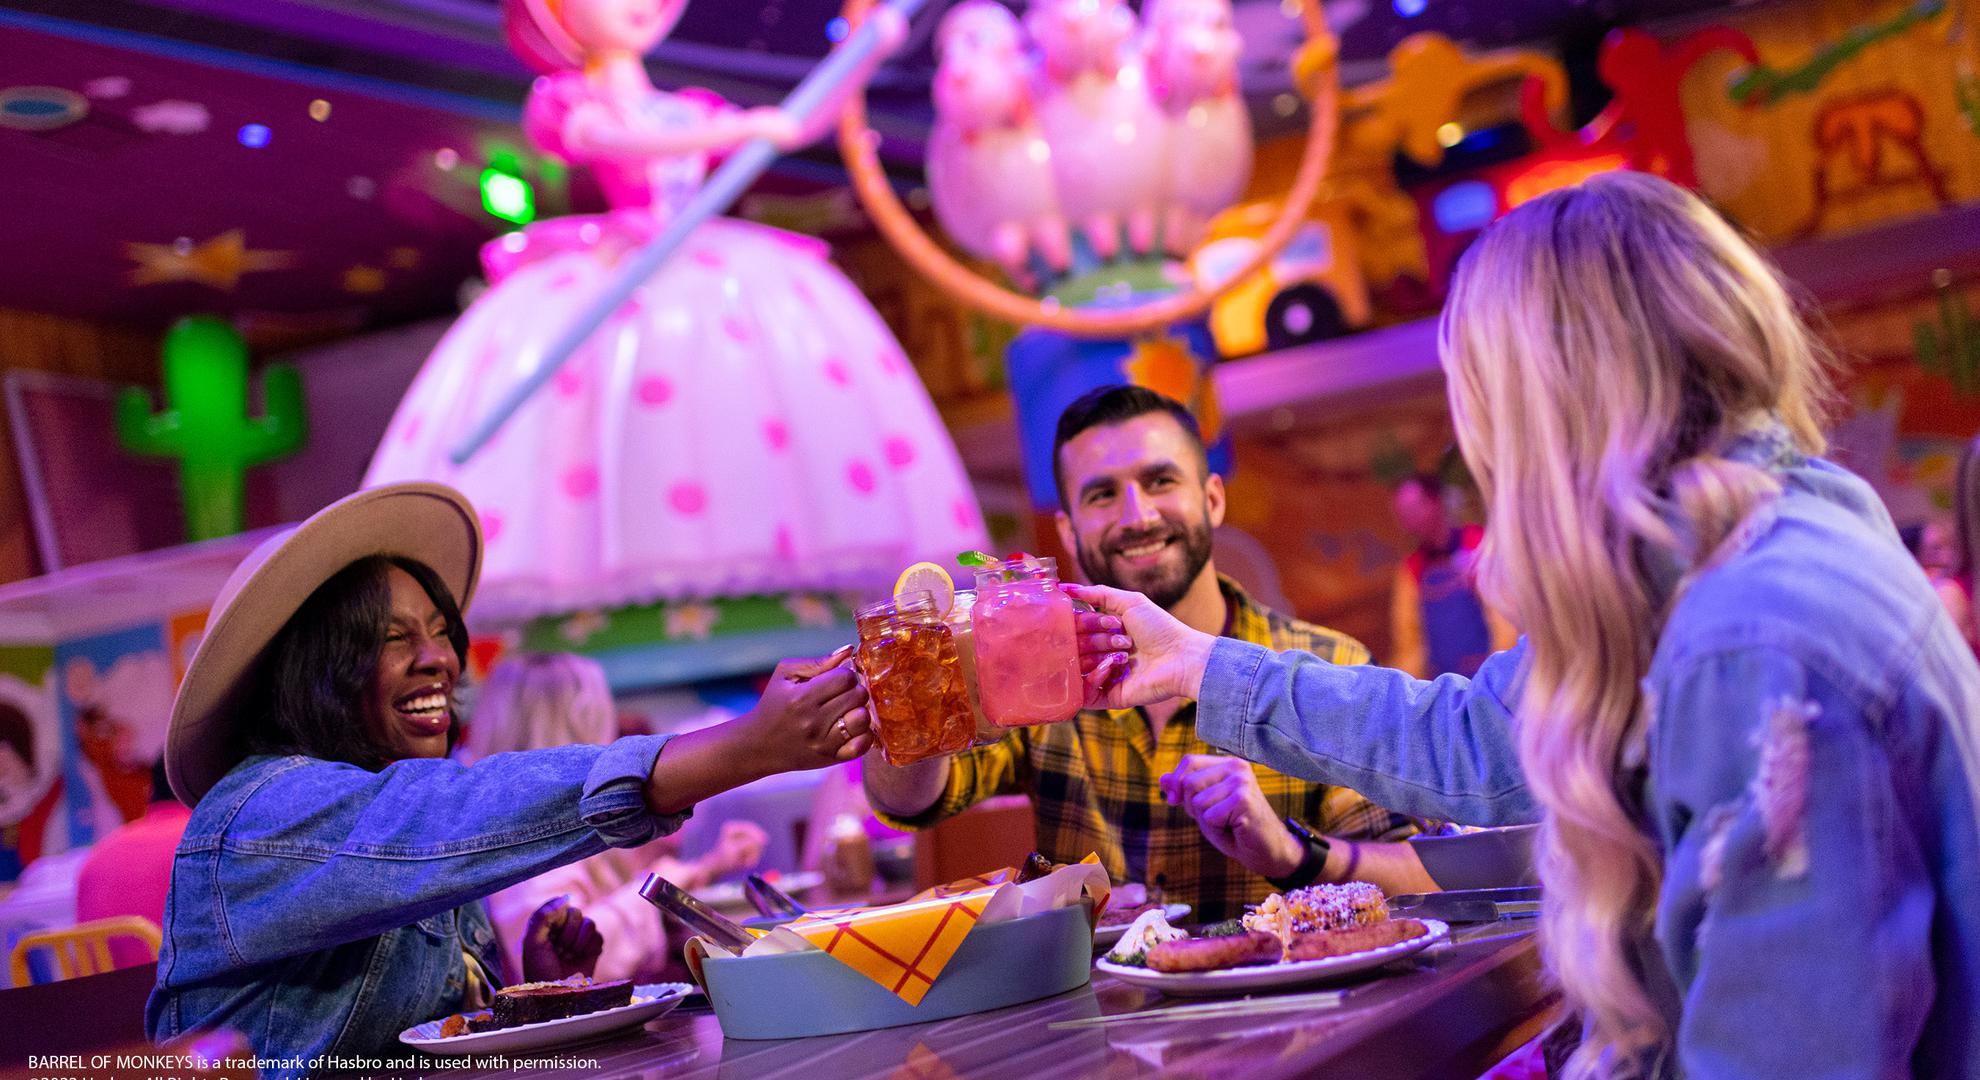 Conoce el primer restaurante inspirado en Toy Story con servicio a la mesa